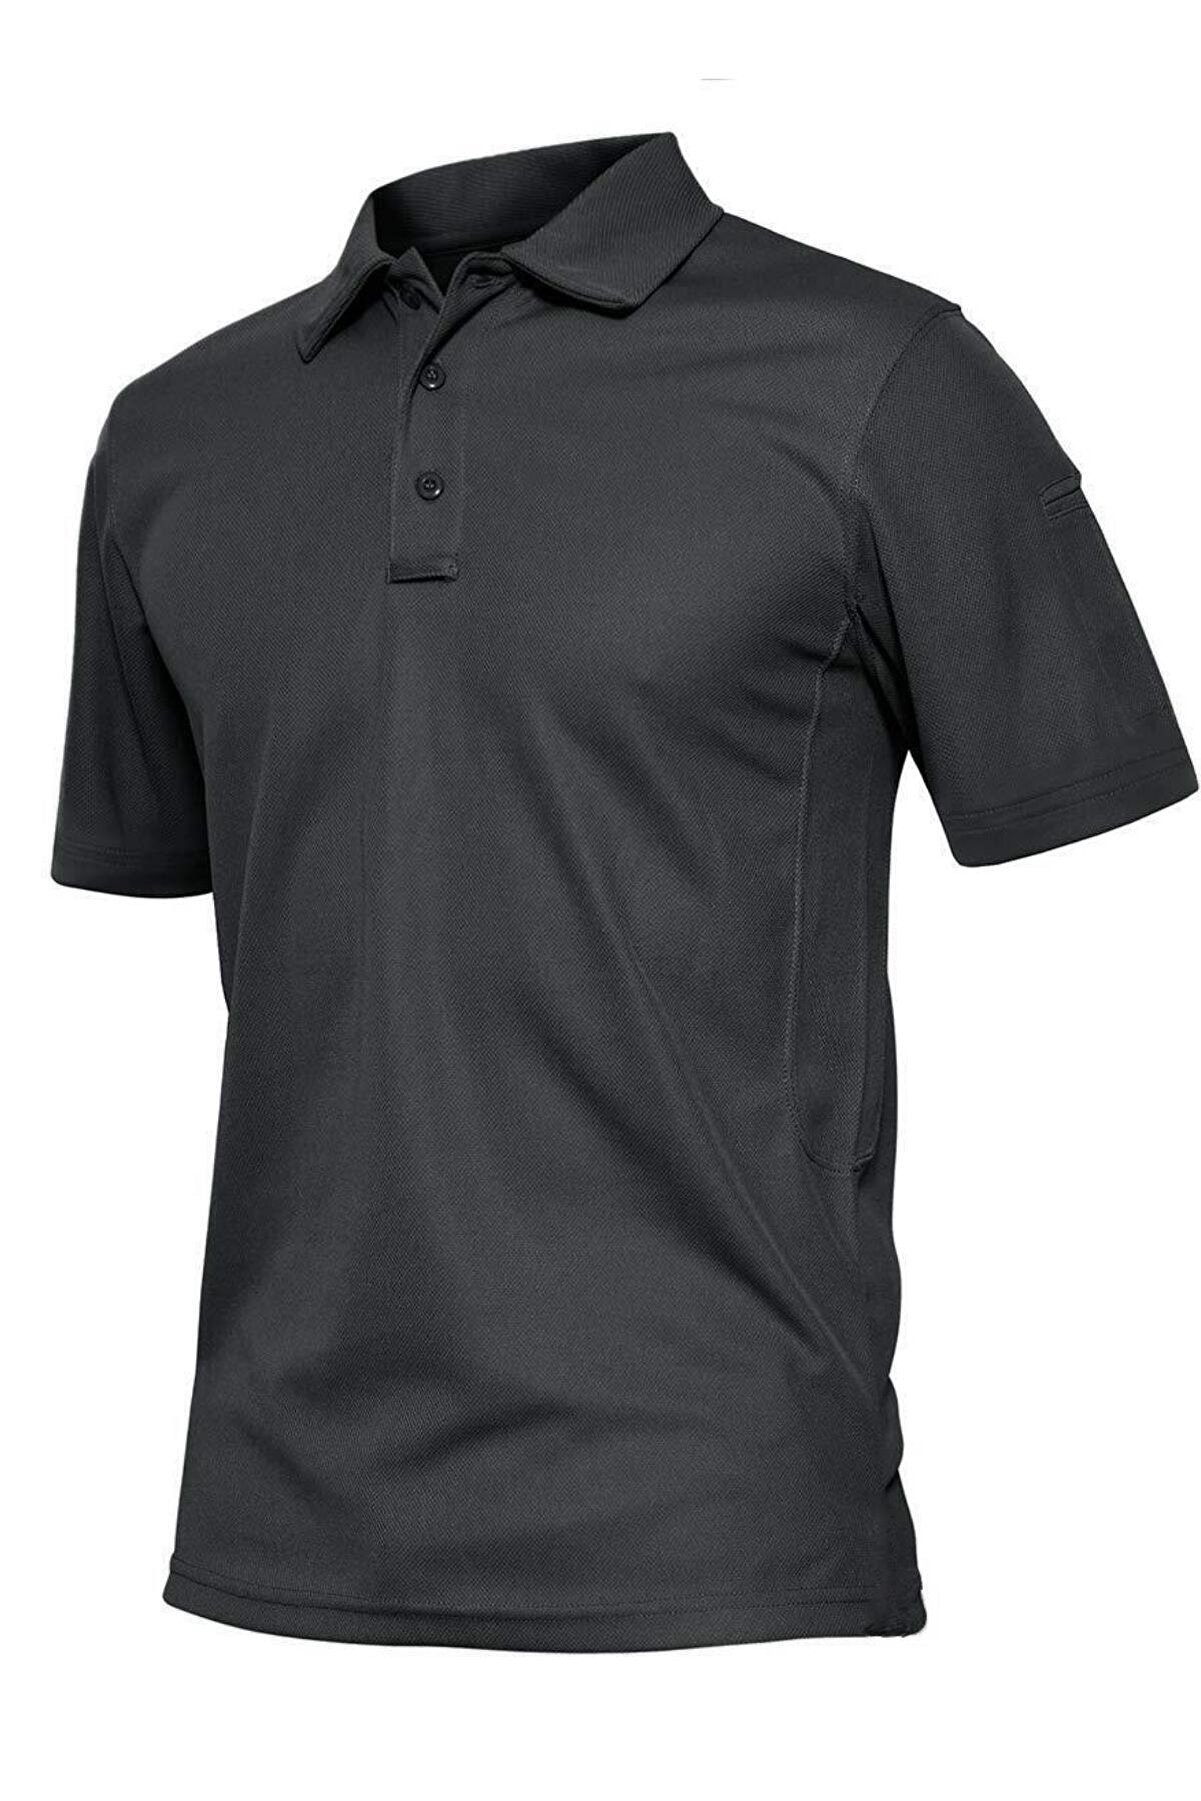 Ghassy Co. Erkek Taktik Polo Yaka Gömlek Hızlı Kuruma Nem Emici Performans Pique Jersey Golf T-shirt - Koyu Gri